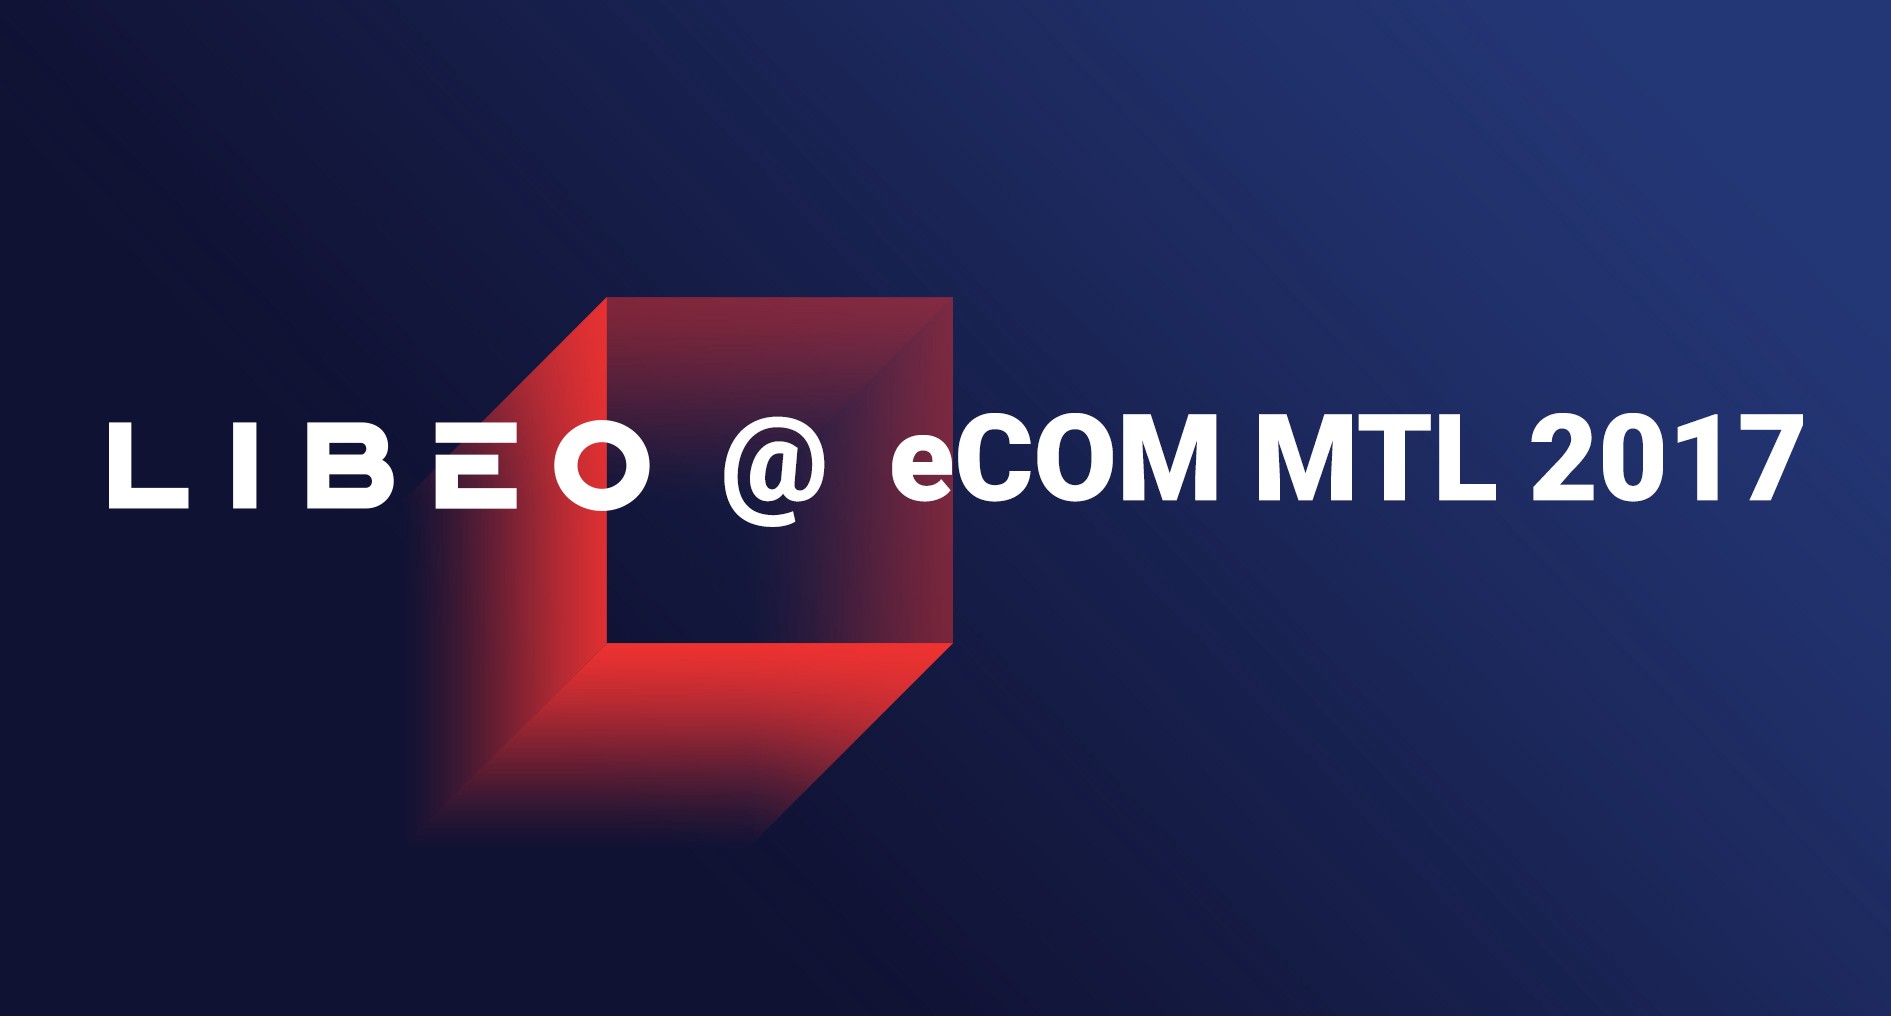 Visuel avec le logo de Libéo et le nom de l'événement eCOM MTL 2017